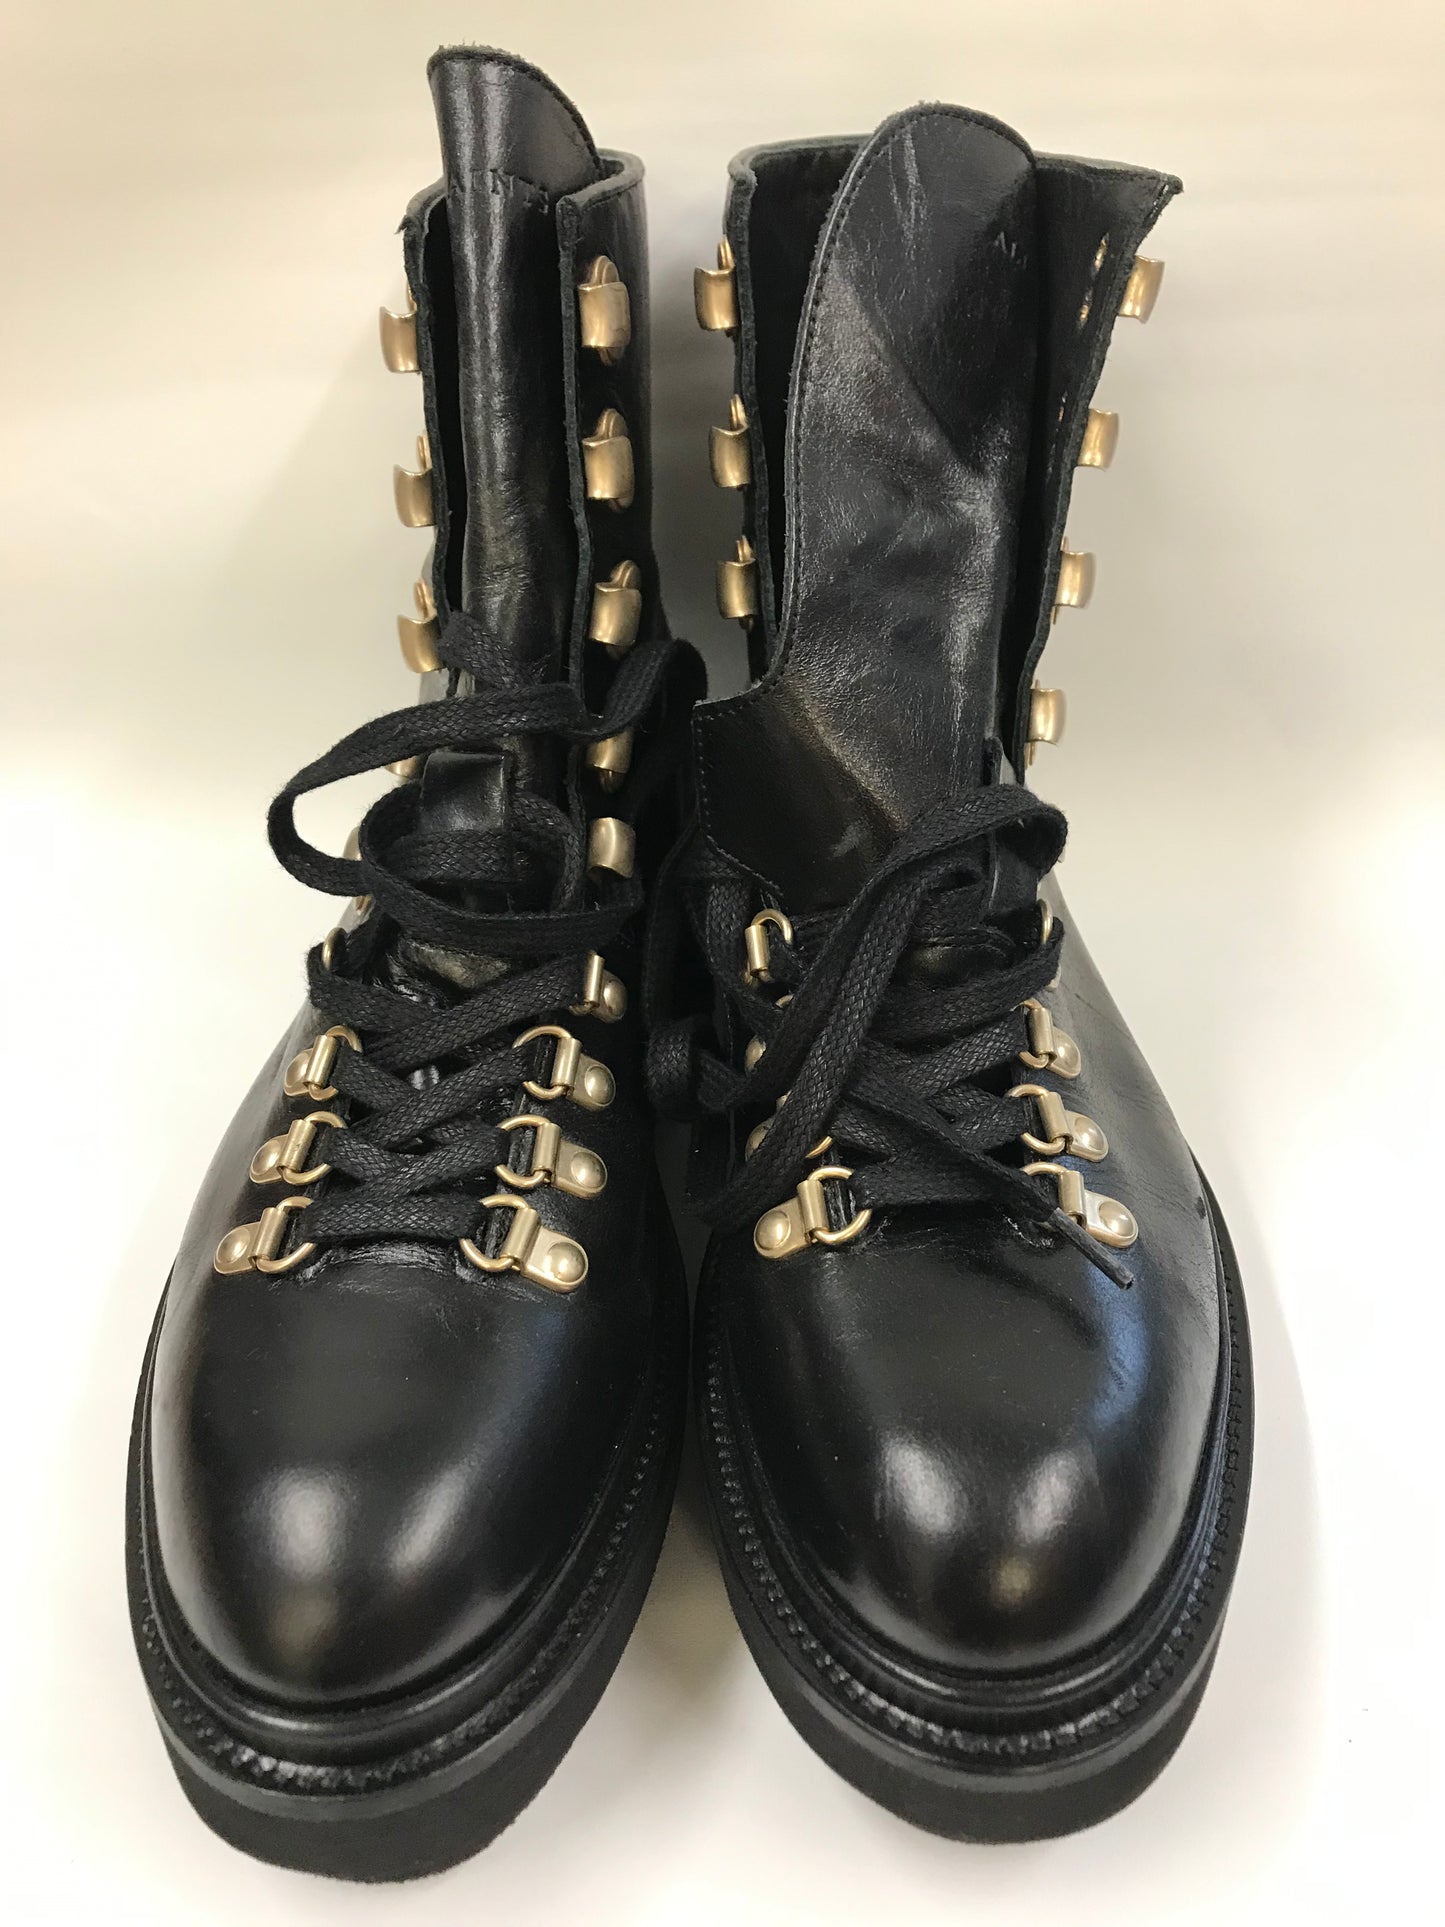 AllSaints Black Lace Up Boots Size 7 BNWT